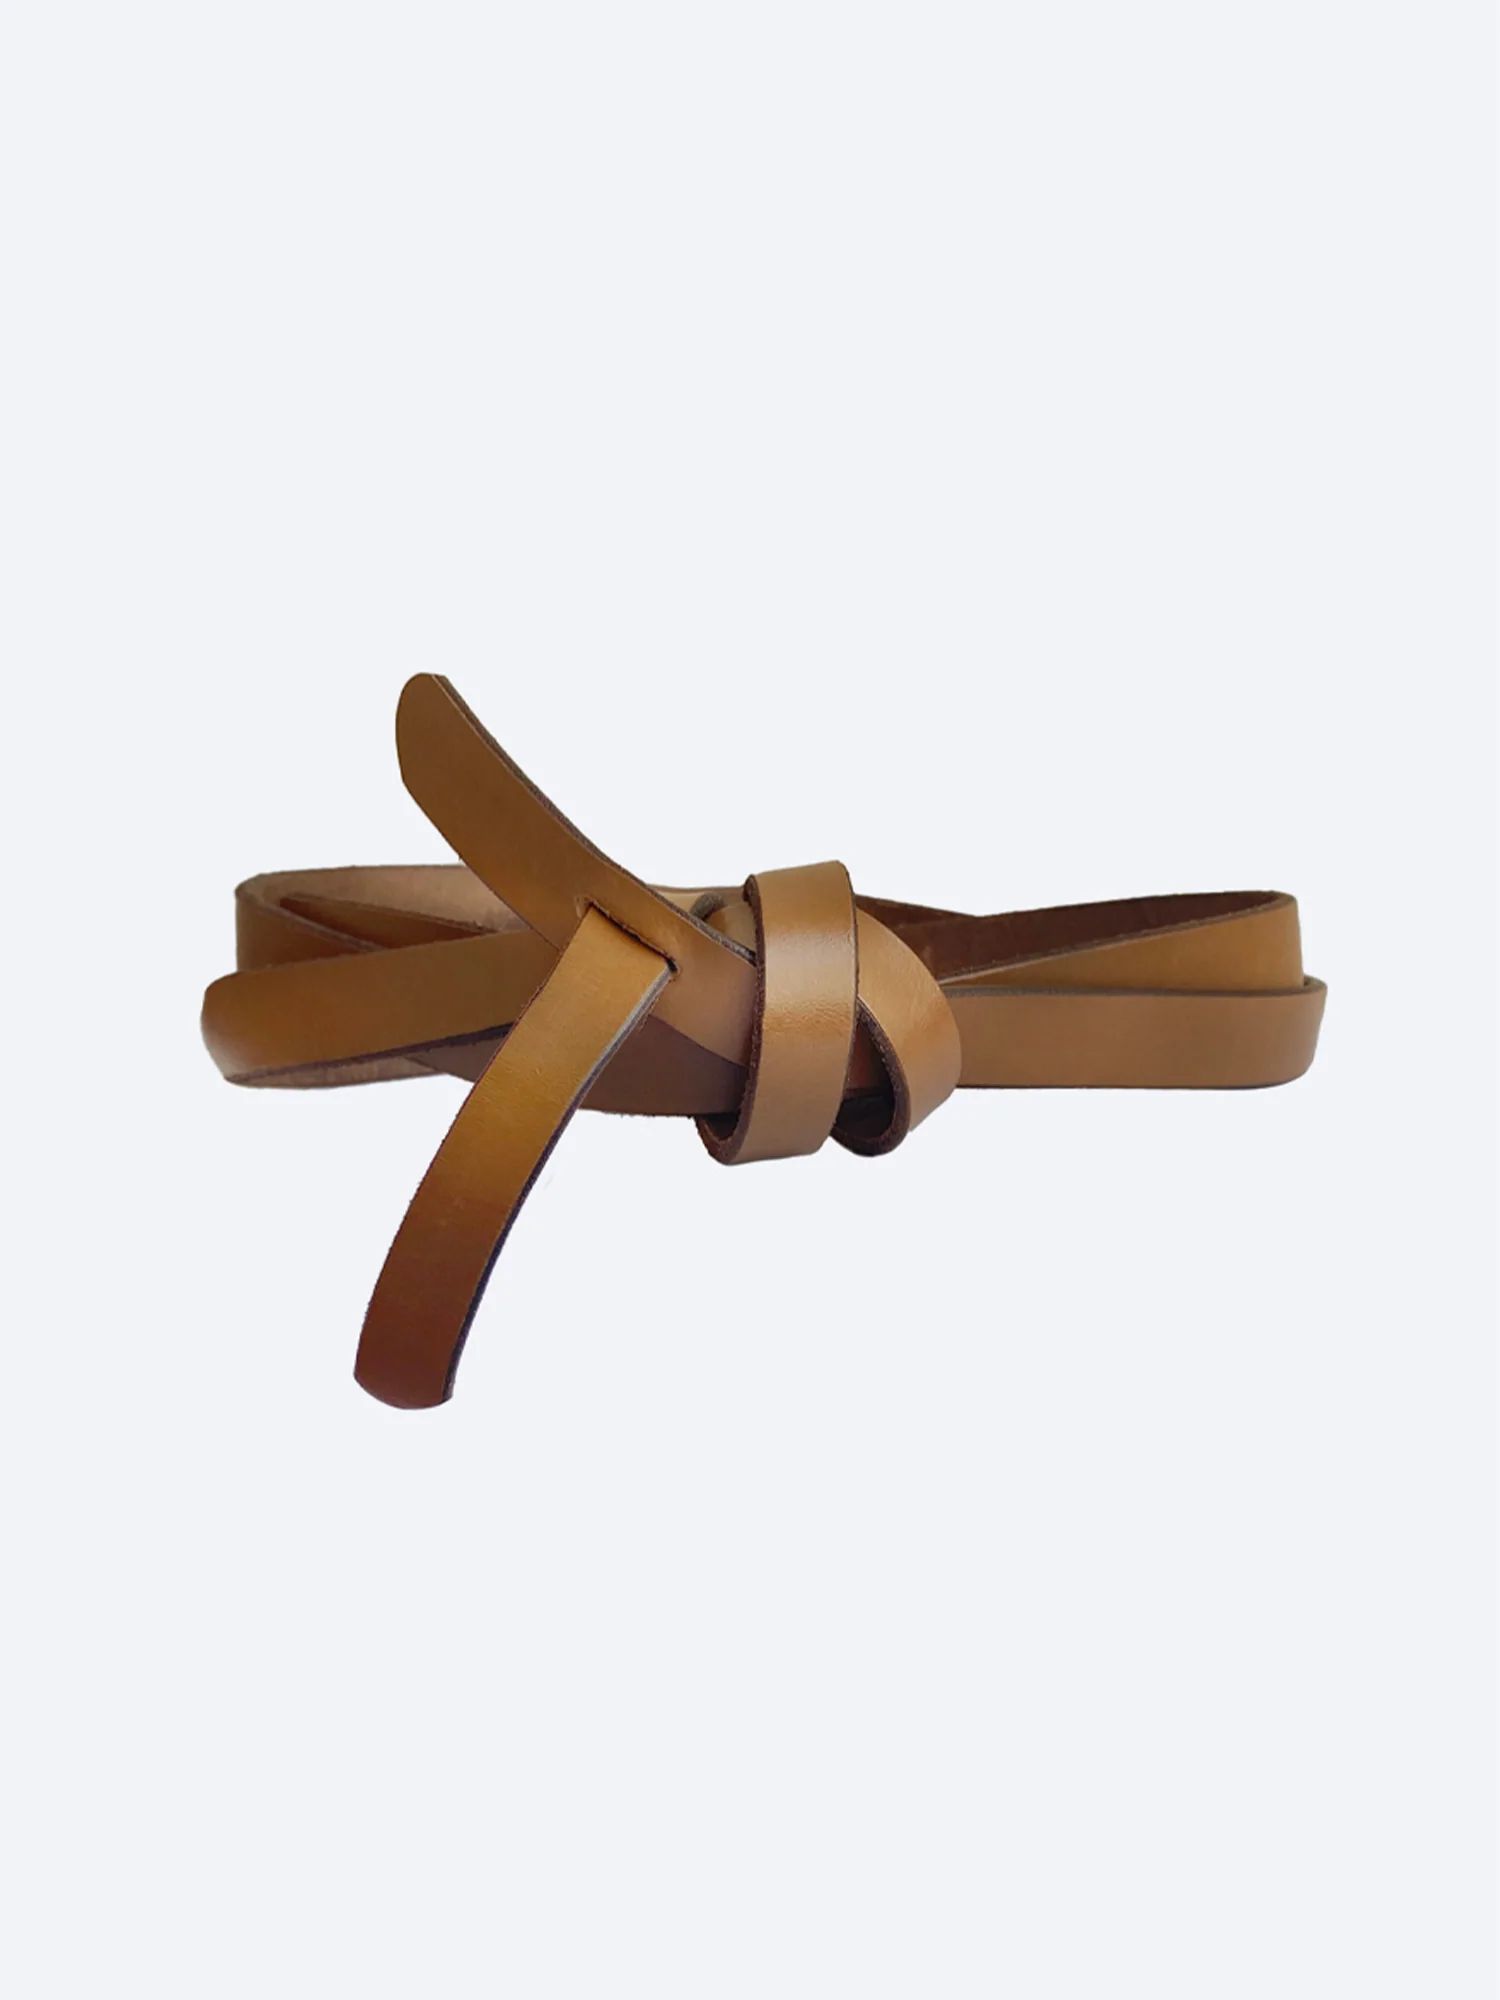 Brochu Walker | Women's Leather Bridle Wrap Belt in Brown | Brochu Walker